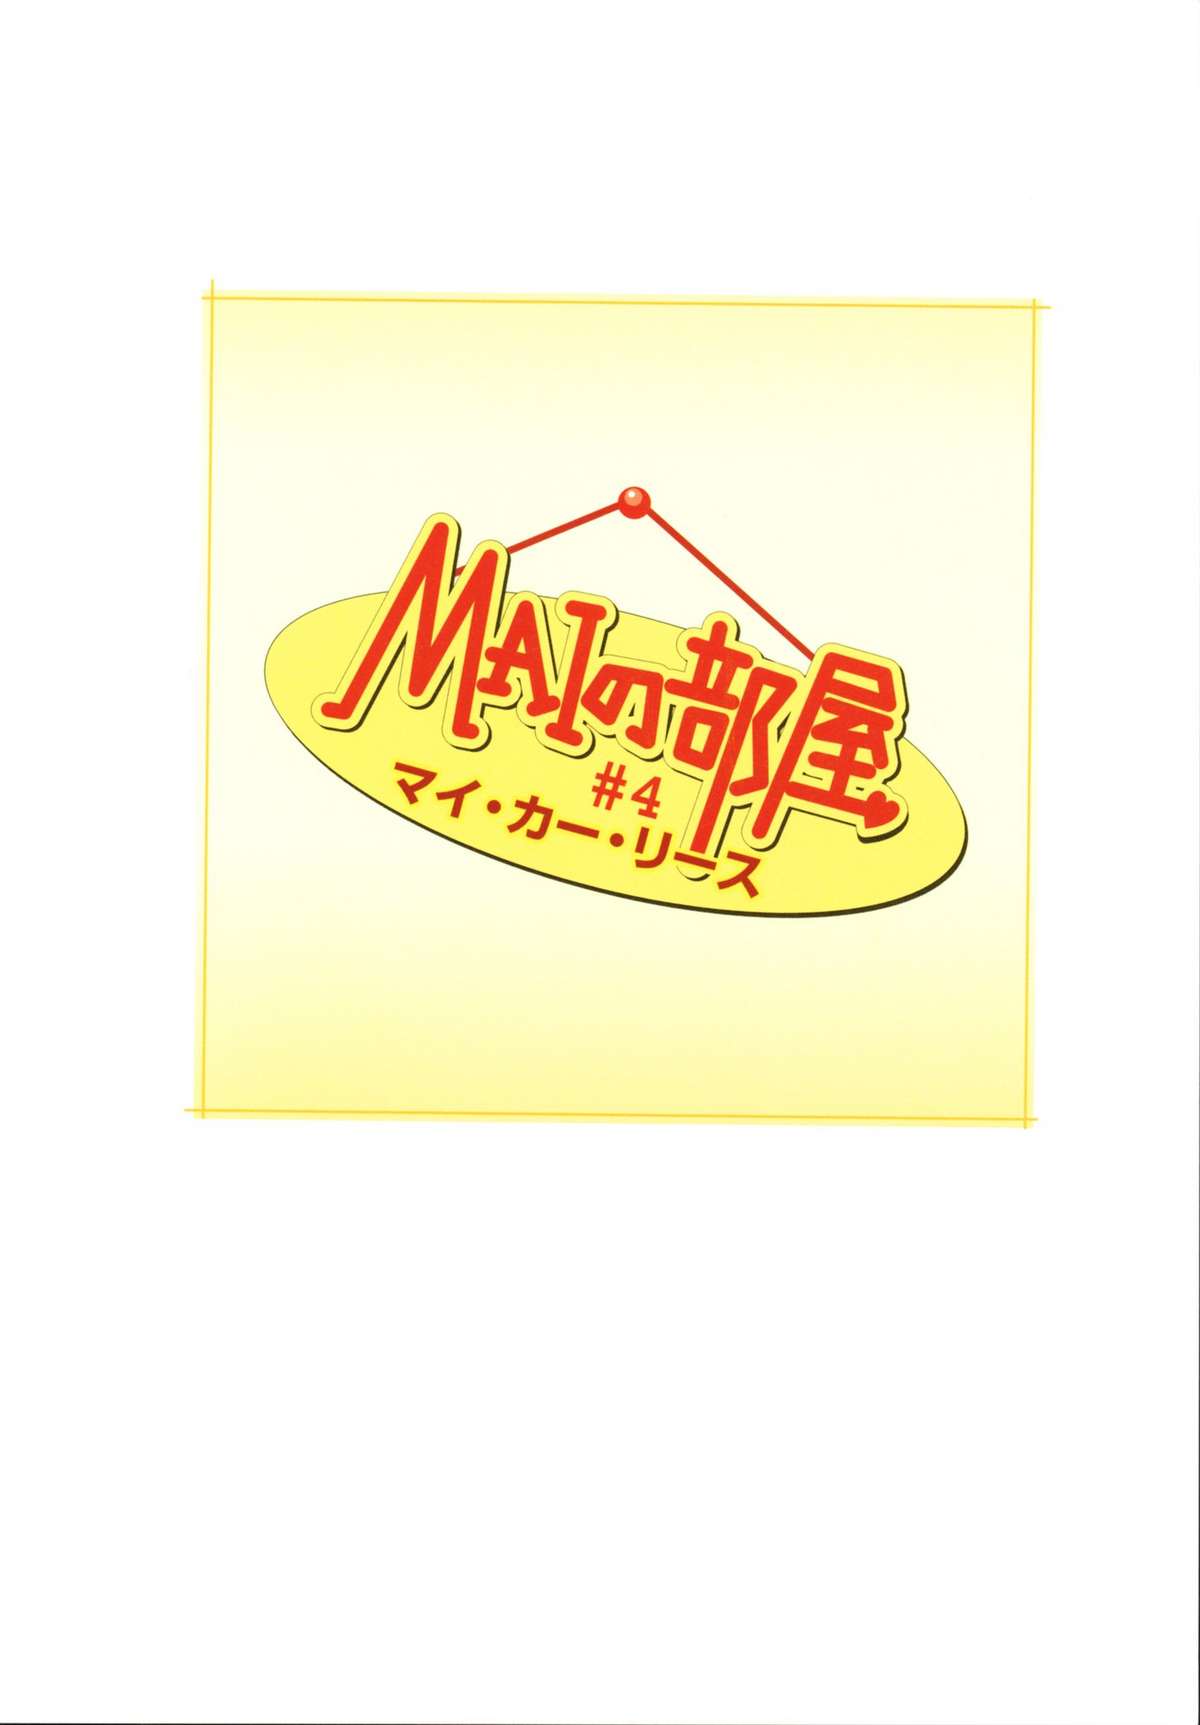 [Yui Toshiki] Mai no Heya Vol. 1 (Complete) 